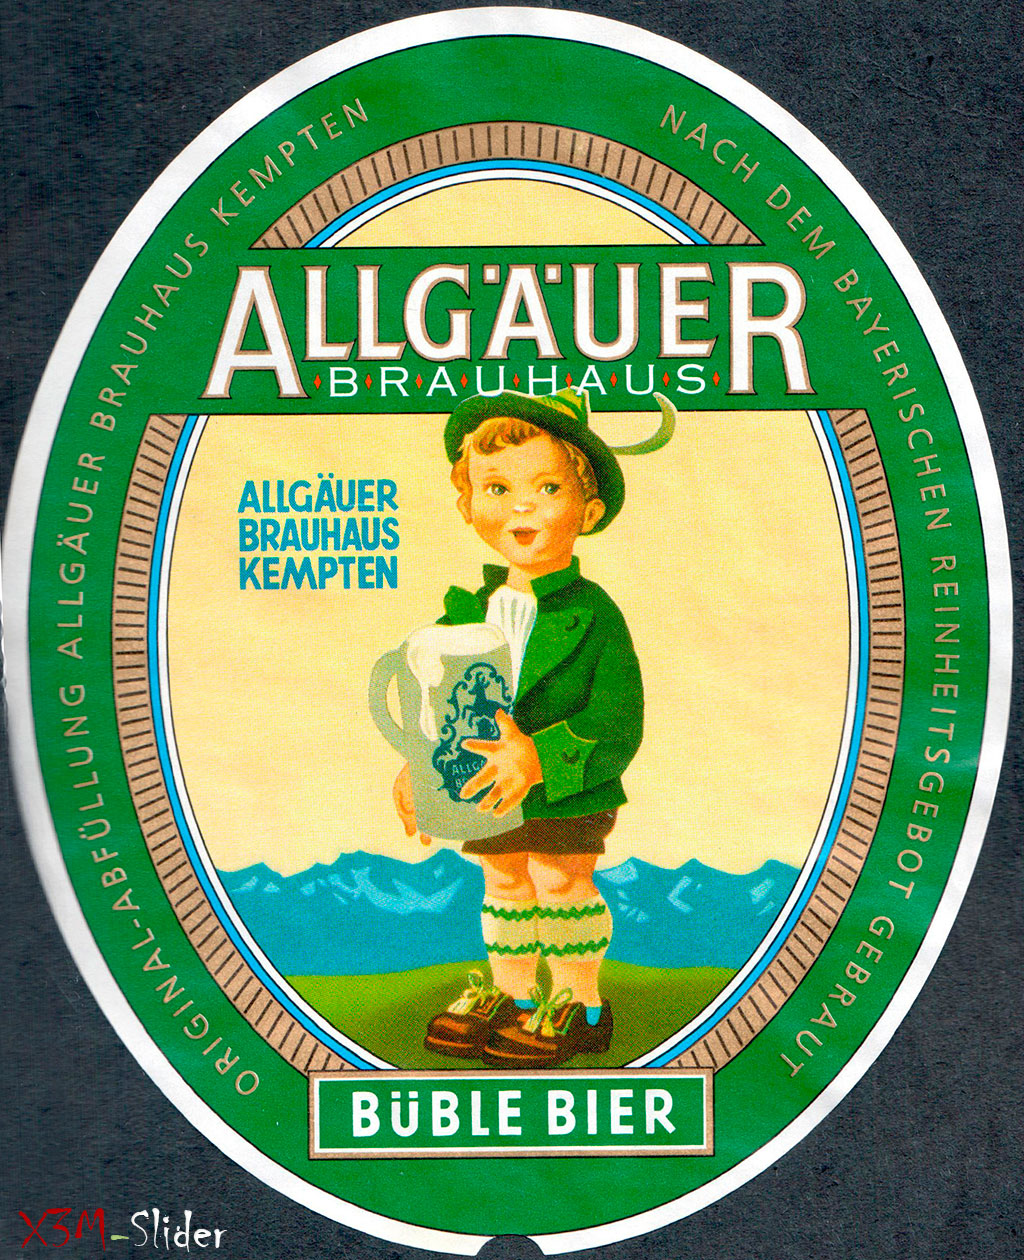 Allgauer Brauhaus Buble Bier